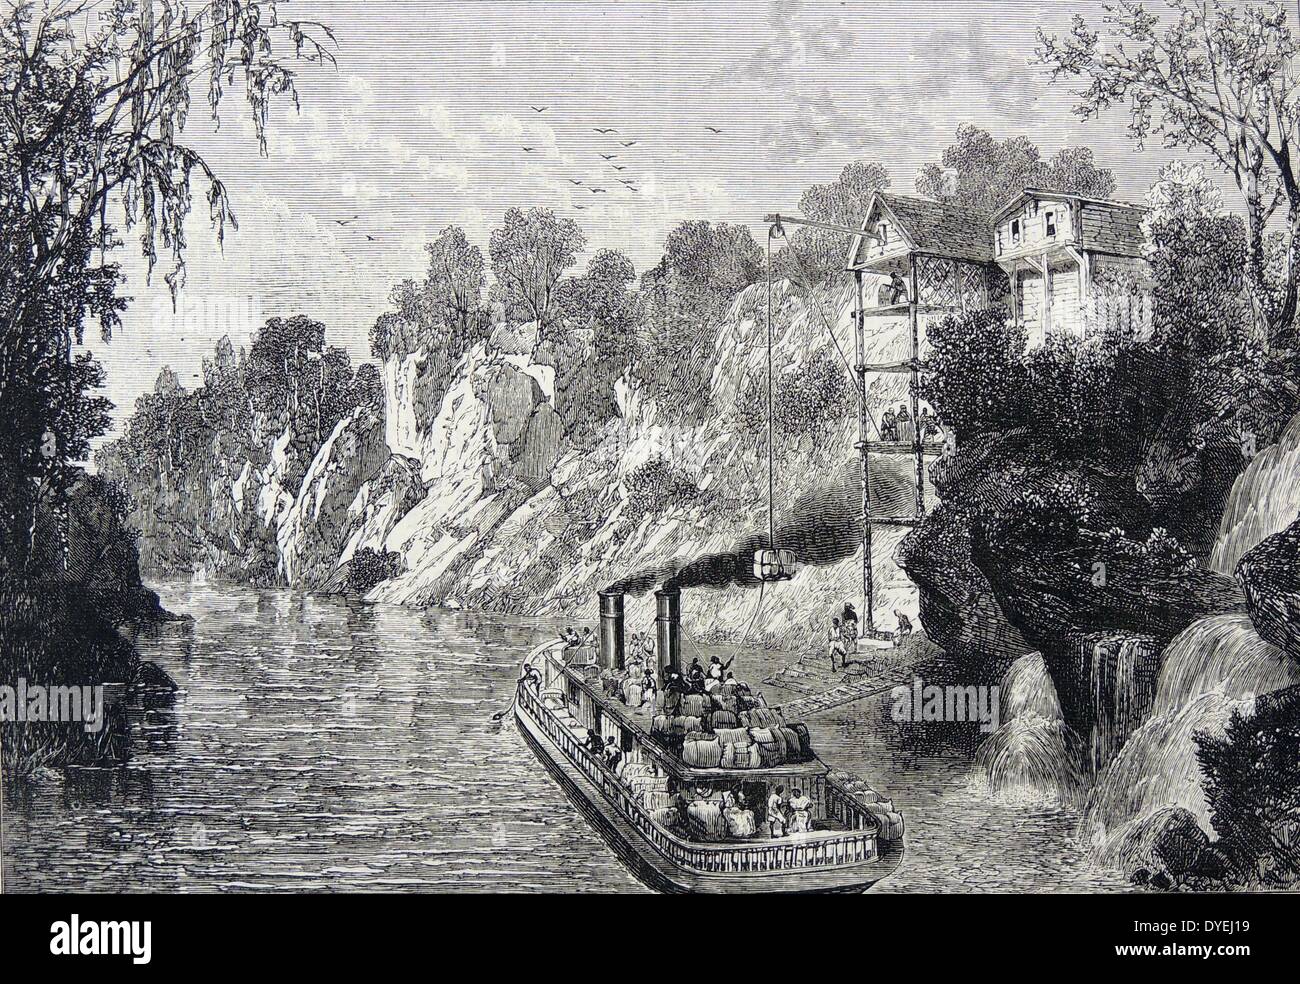 Chargement de balles de coton sur un bateau à vapeur sur le fleuve Mississippi, USA. La gravure, Londres, 1880. Banque D'Images